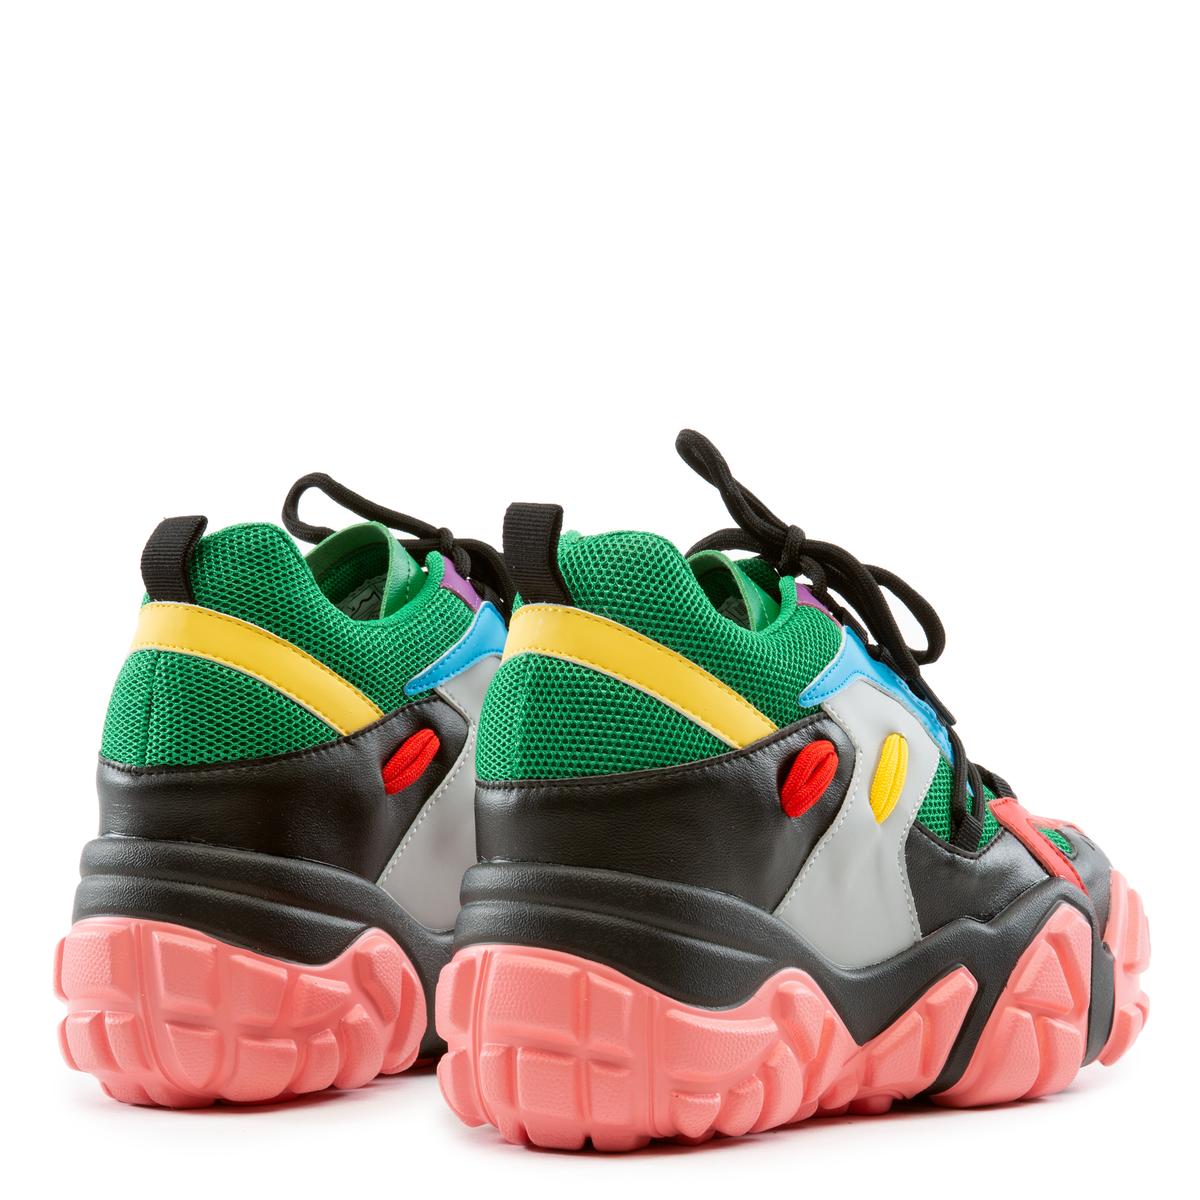 Persimmon-01 Wedge Sneakers